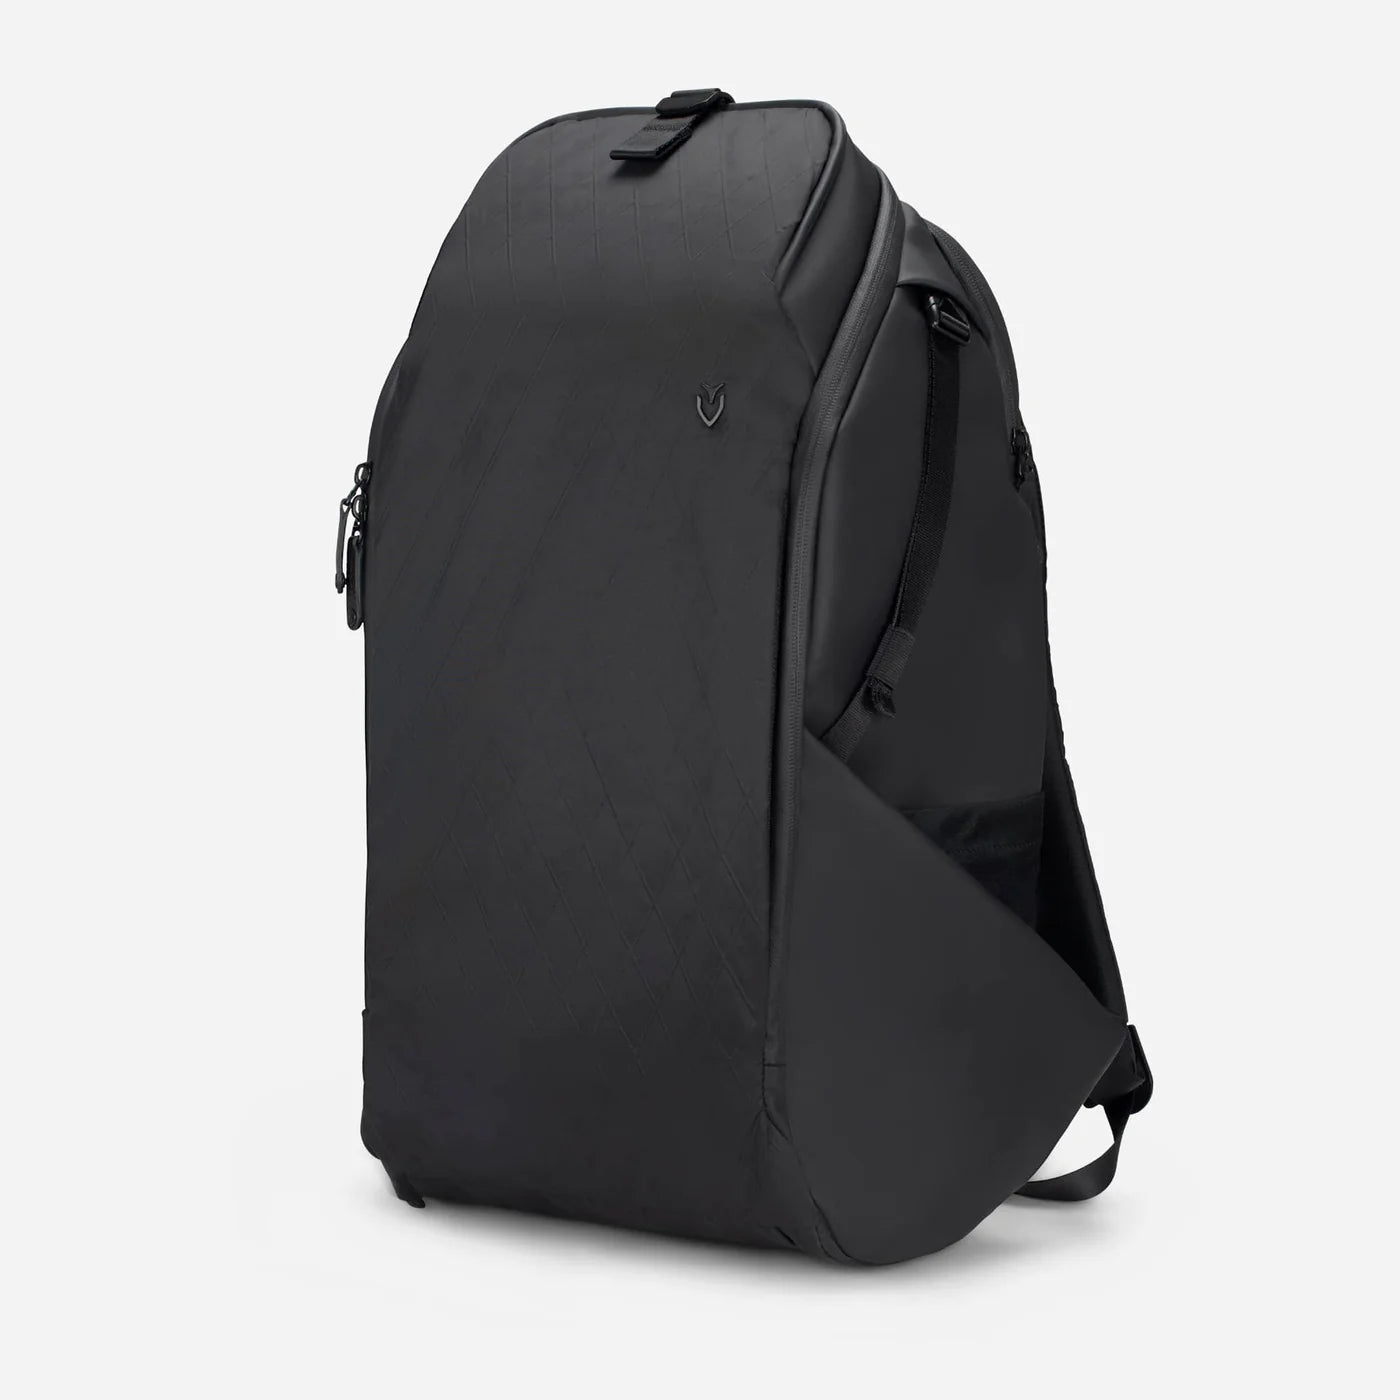 PrimeX Plus DXR Backpack